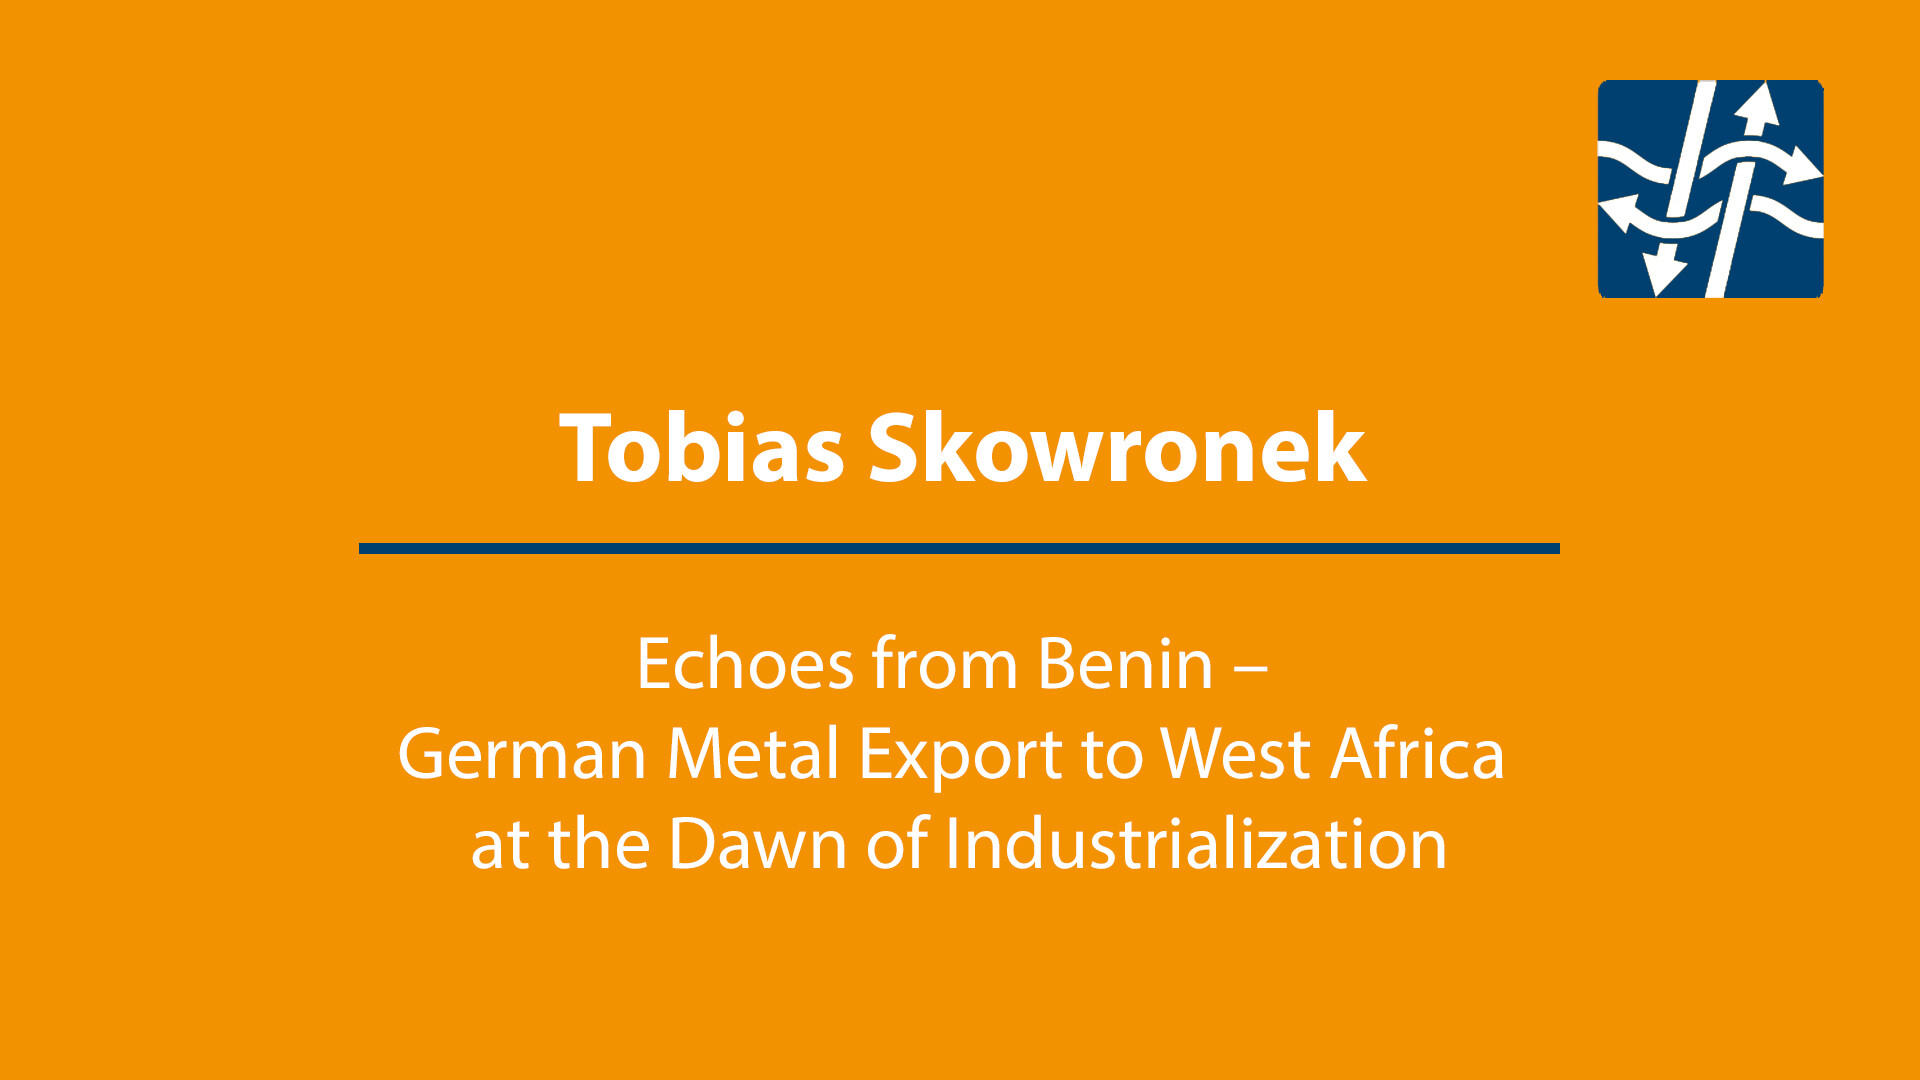 Tobias Skowronek: Echoes from Benin - German Metal Export to West Africa at the Dawn of Industrialization.